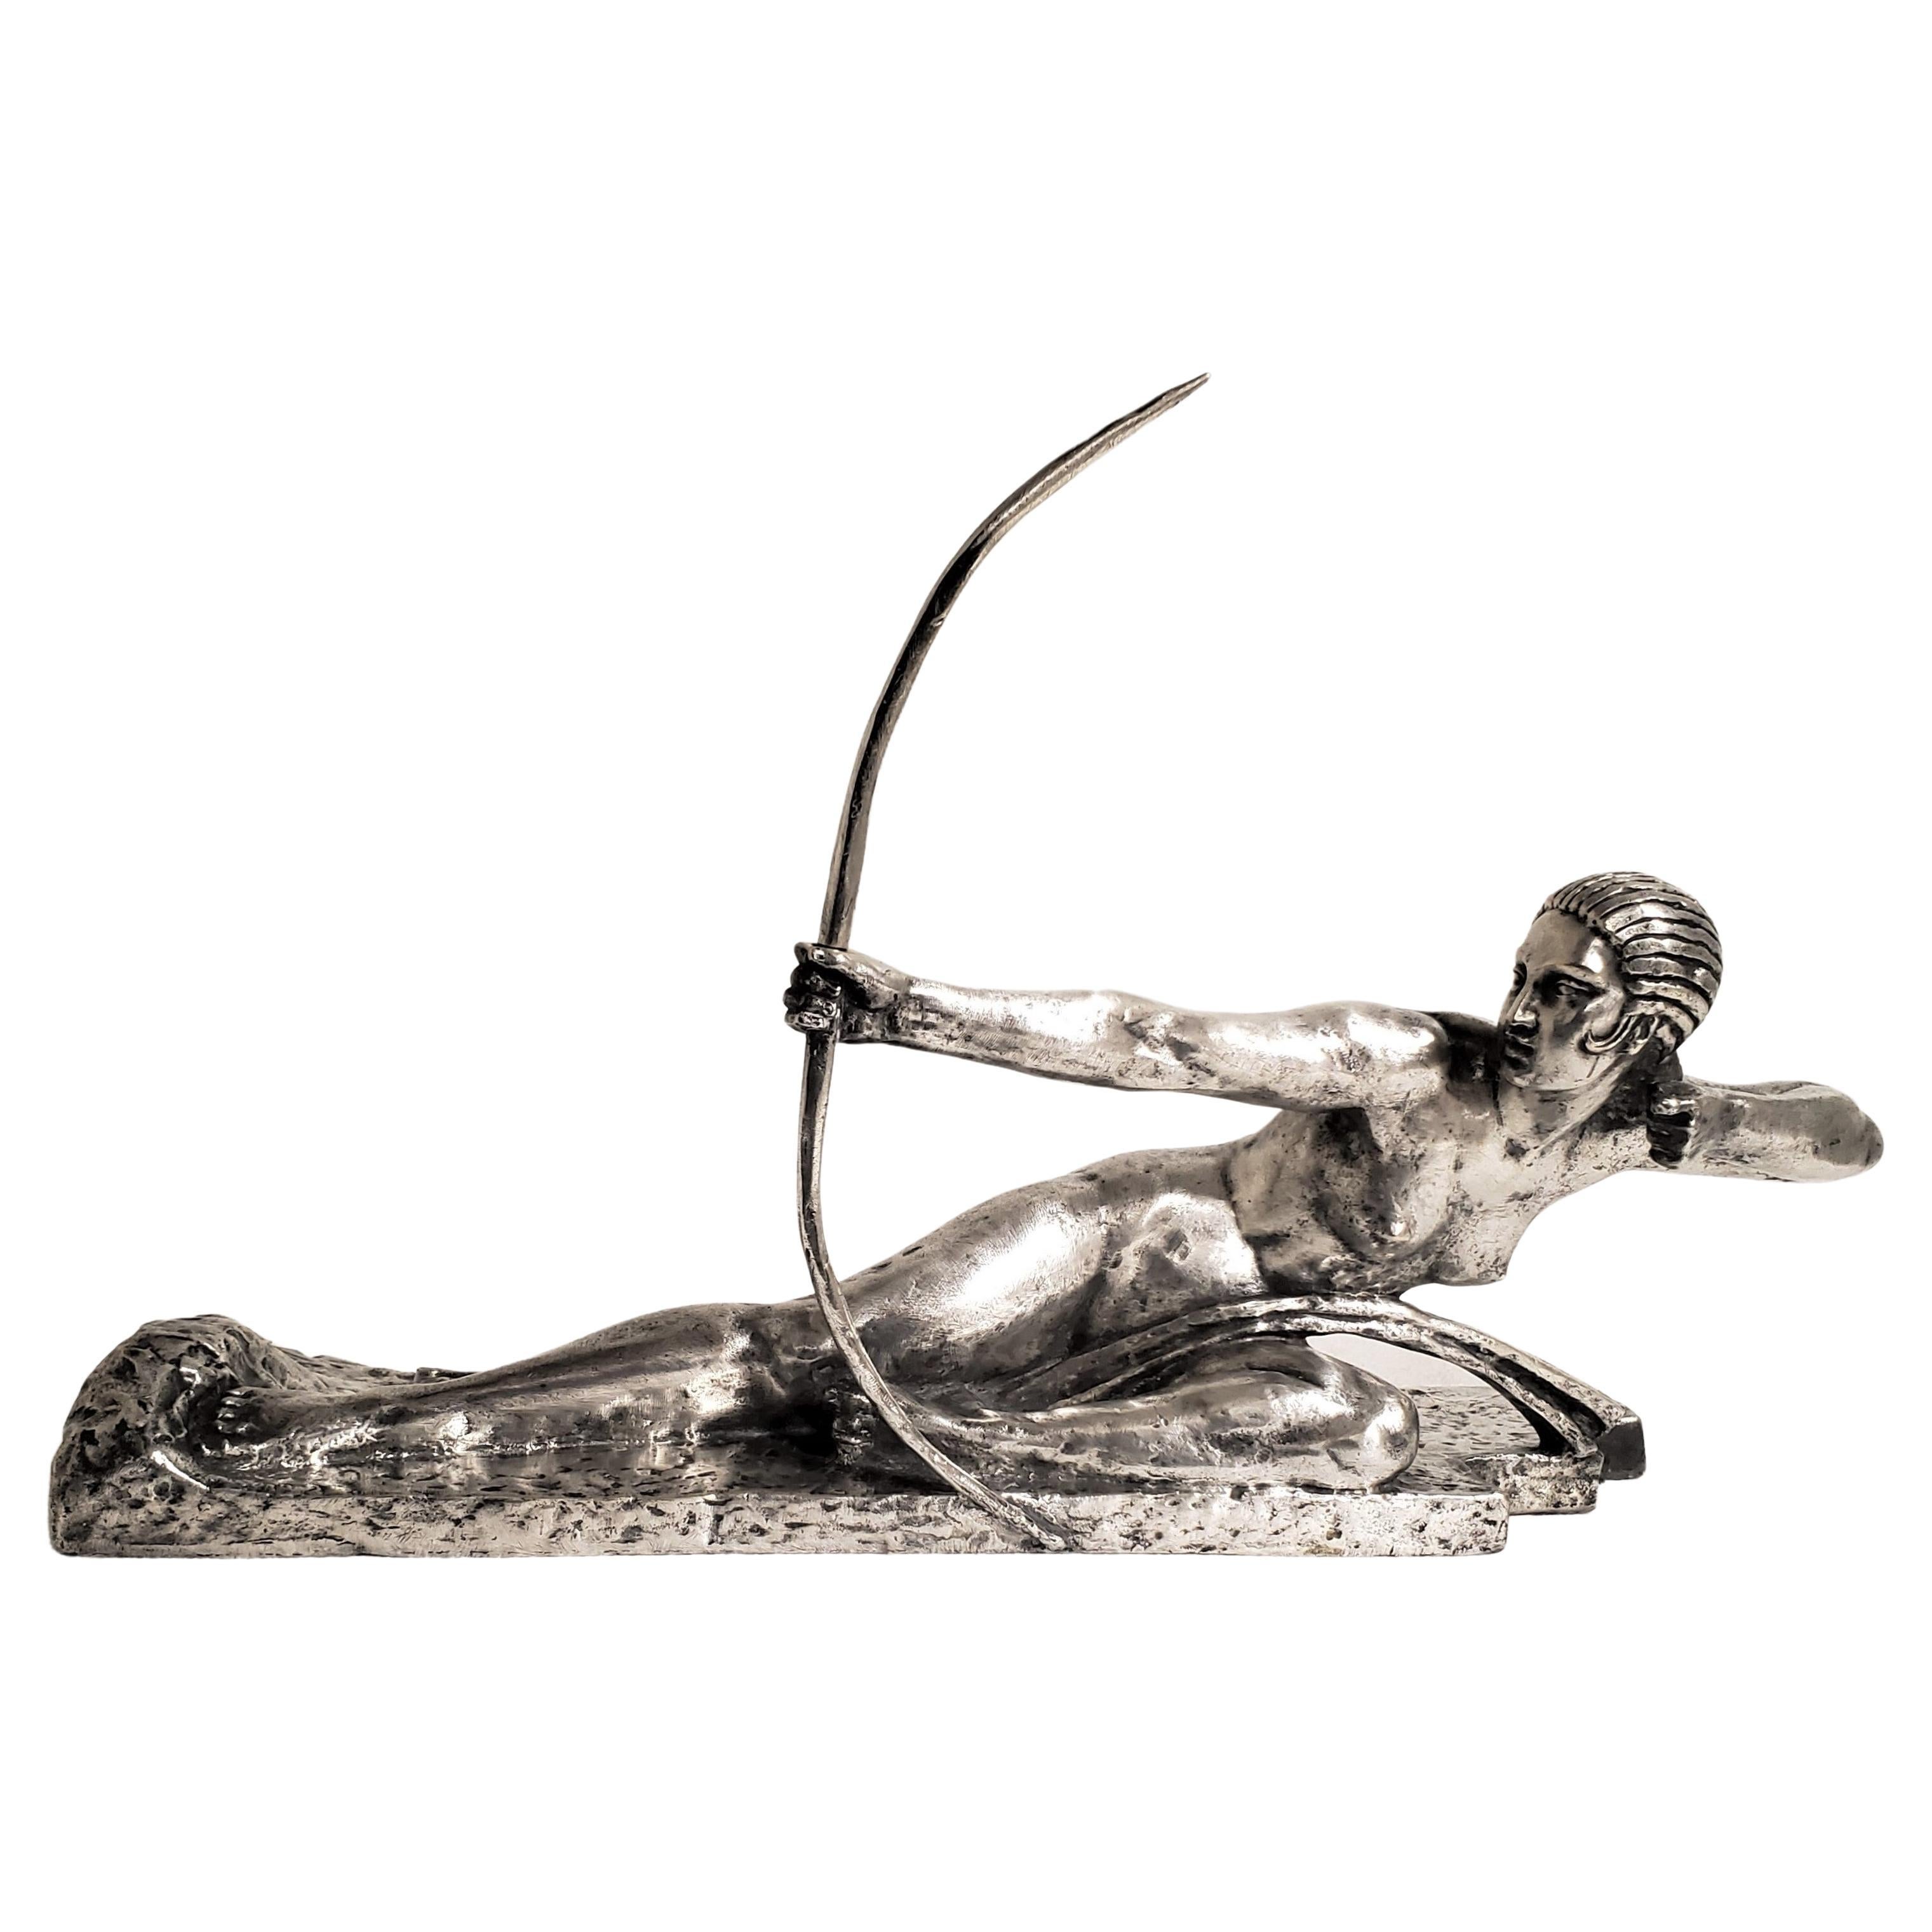 Sculpture en bronze argenté représentant une femme Andretics, nue et avec un arc, signée par l'artiste Marcel-André Bouraine, fondue par Susse Frères dans la technique de la cire perdue 